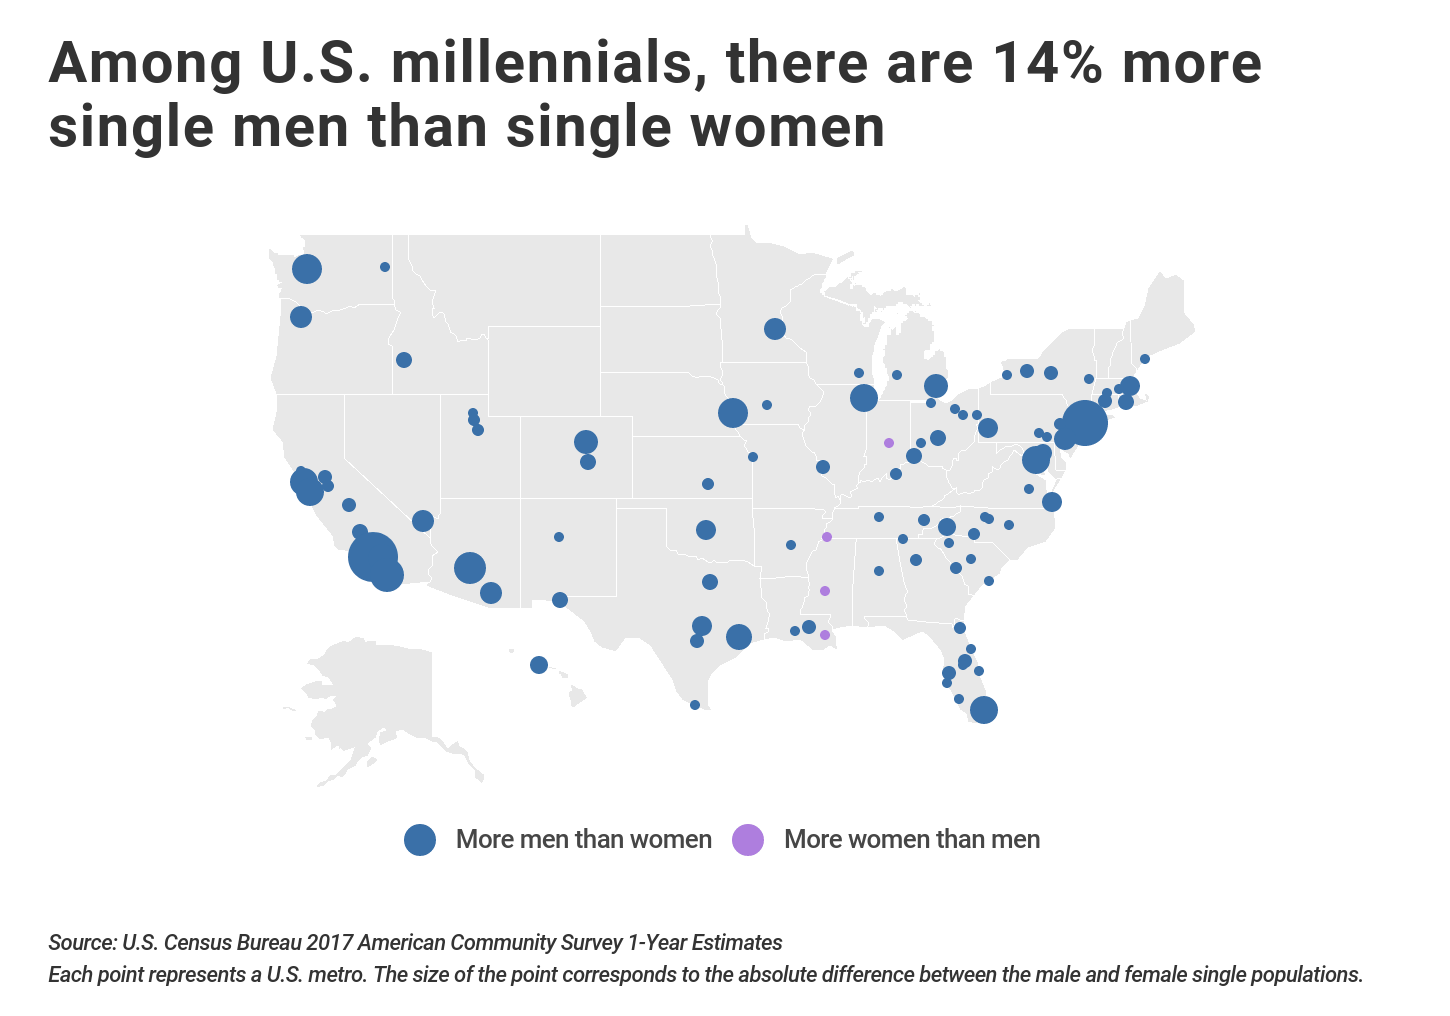 Heat map showing single millennials gender balance